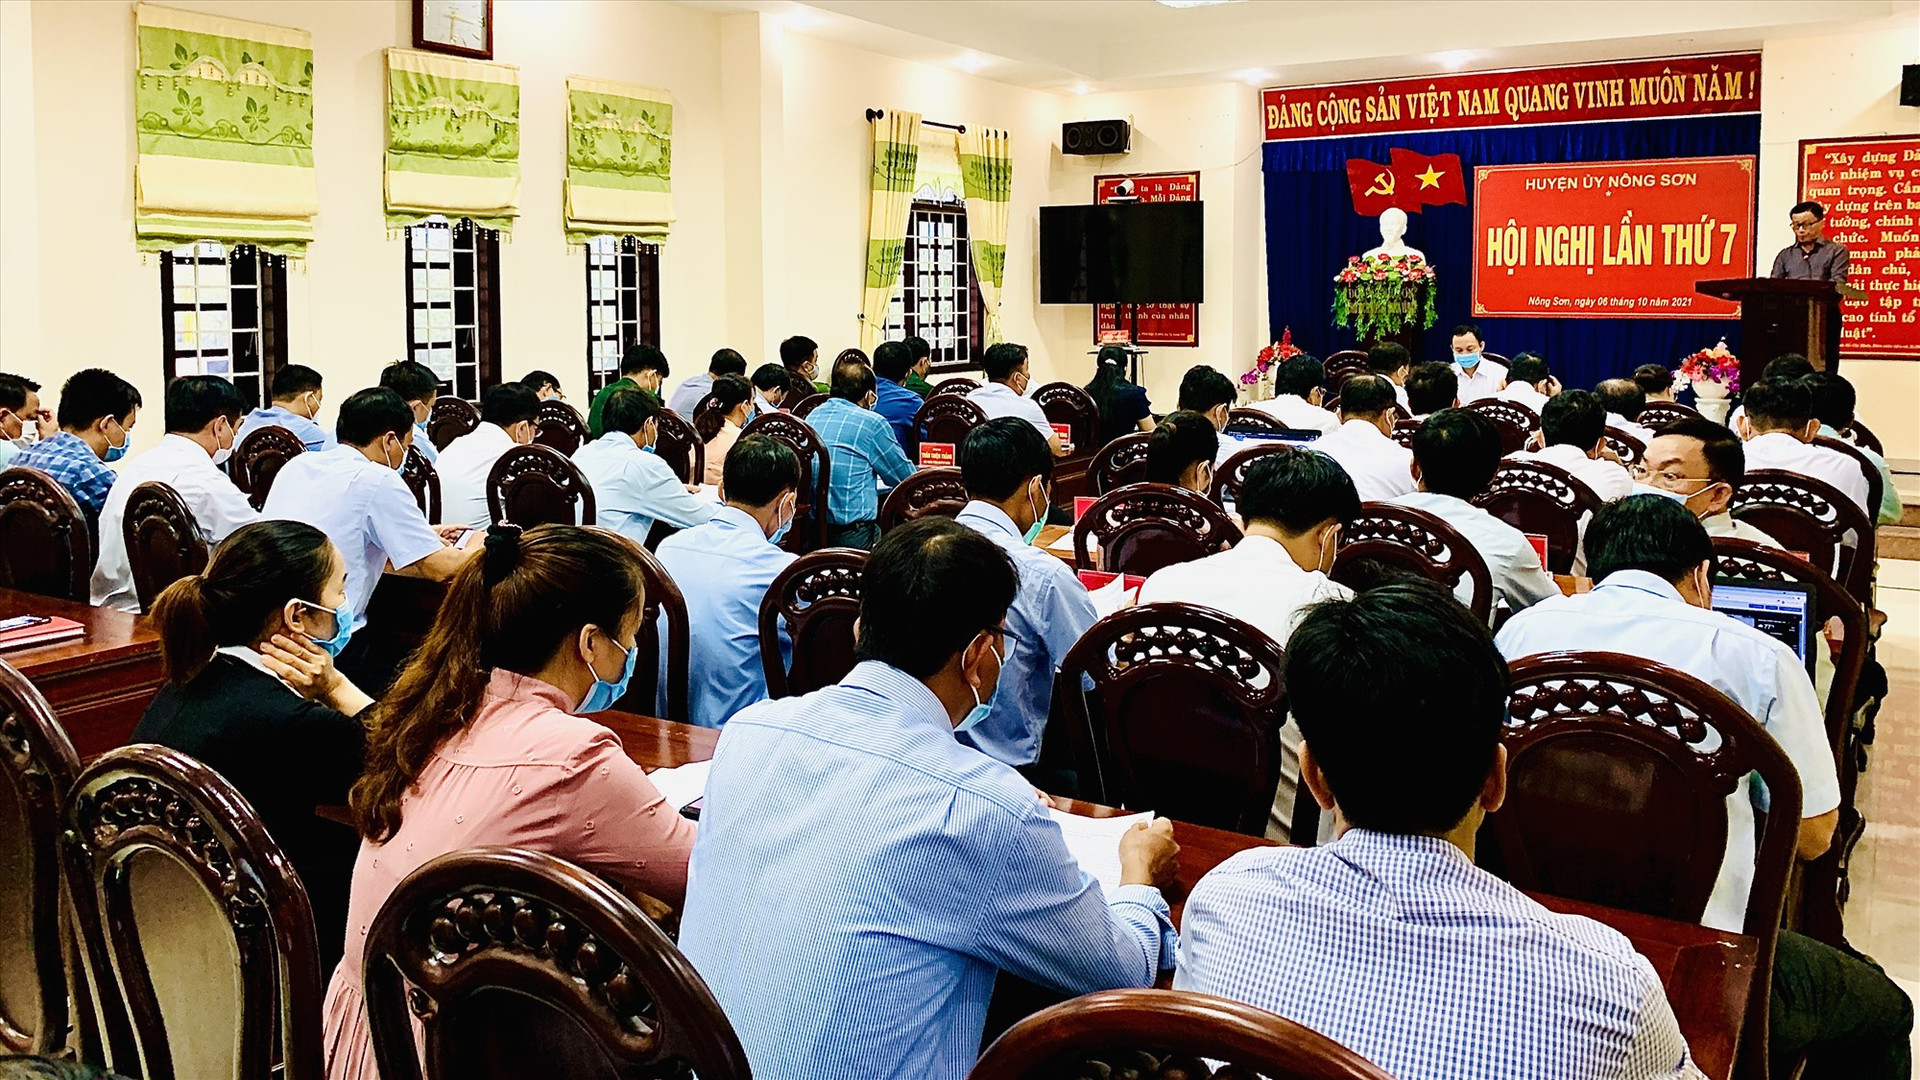 Quang cảnh hội nghị BCH Đảng bộ huyện Nông Sơn lần thứ 7 (nhiệm kỳ 2020-2025). ảnh MINH THÔNG